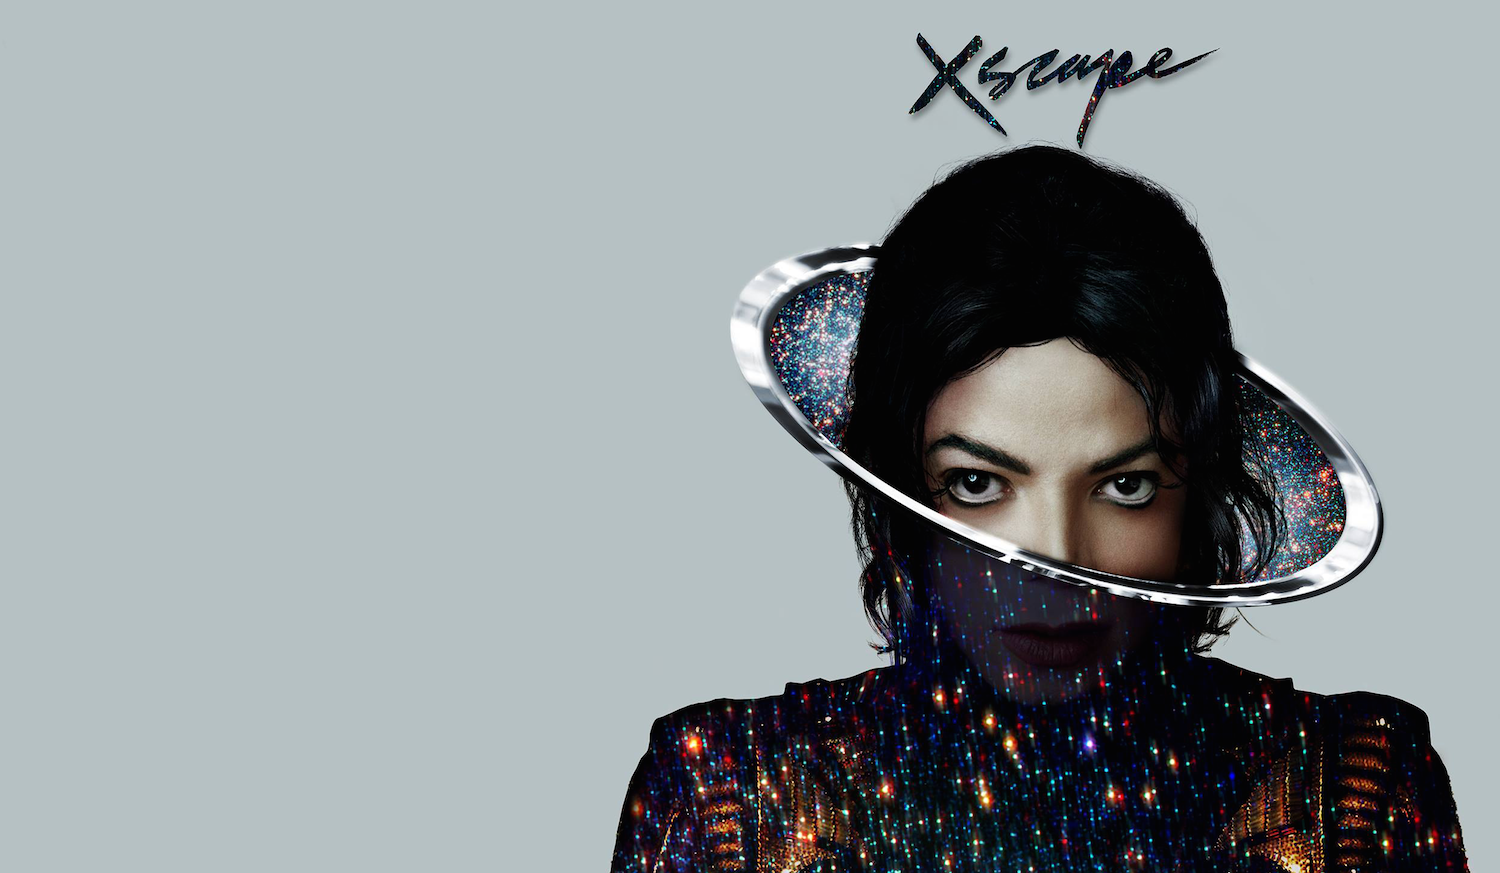 Michael jackson chicago. Michael Jackson Xscape album. Альбом Xscape Michael Jackson.